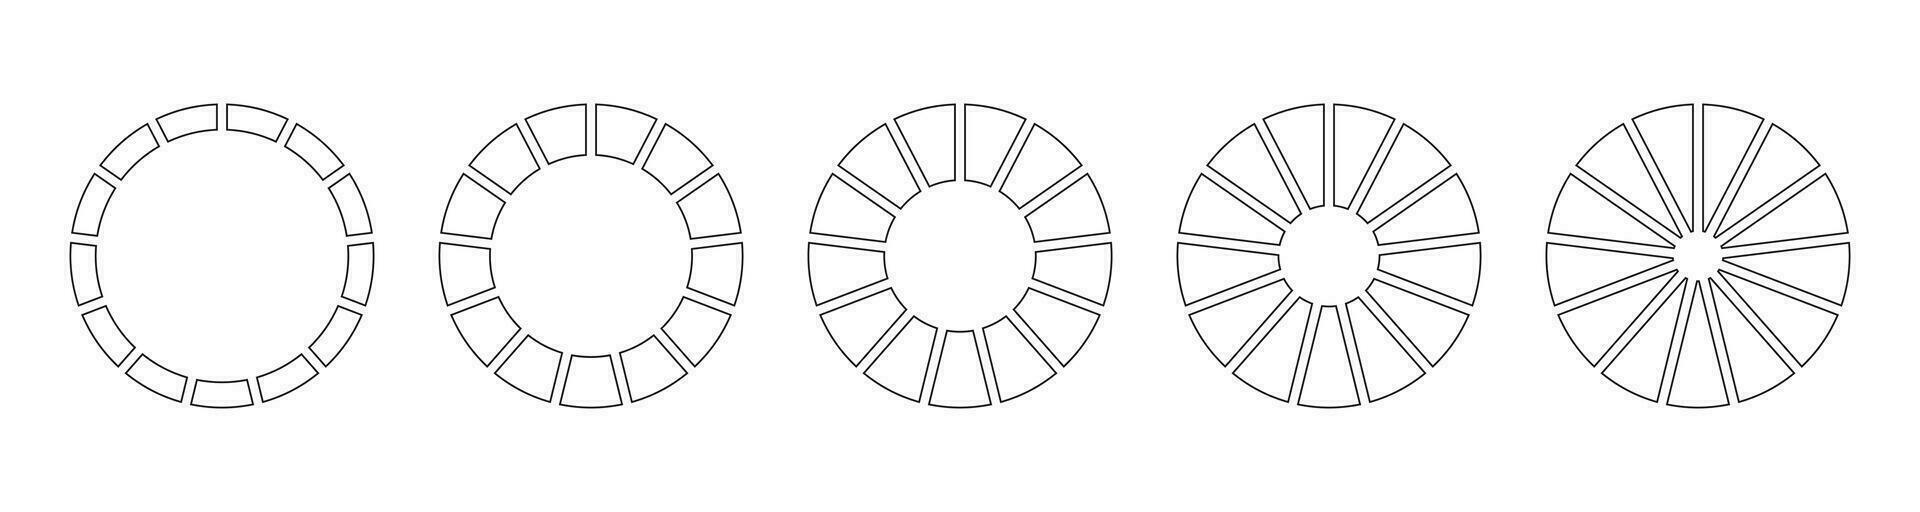 cercle division sur 13 égal les pièces. roue divisé diagrammes avec treize segments. ensemble de Facile infographie. encadrement blanc. cercles section graphique ligne art. contour Donut graphiques ou tartes Icônes. vecteur